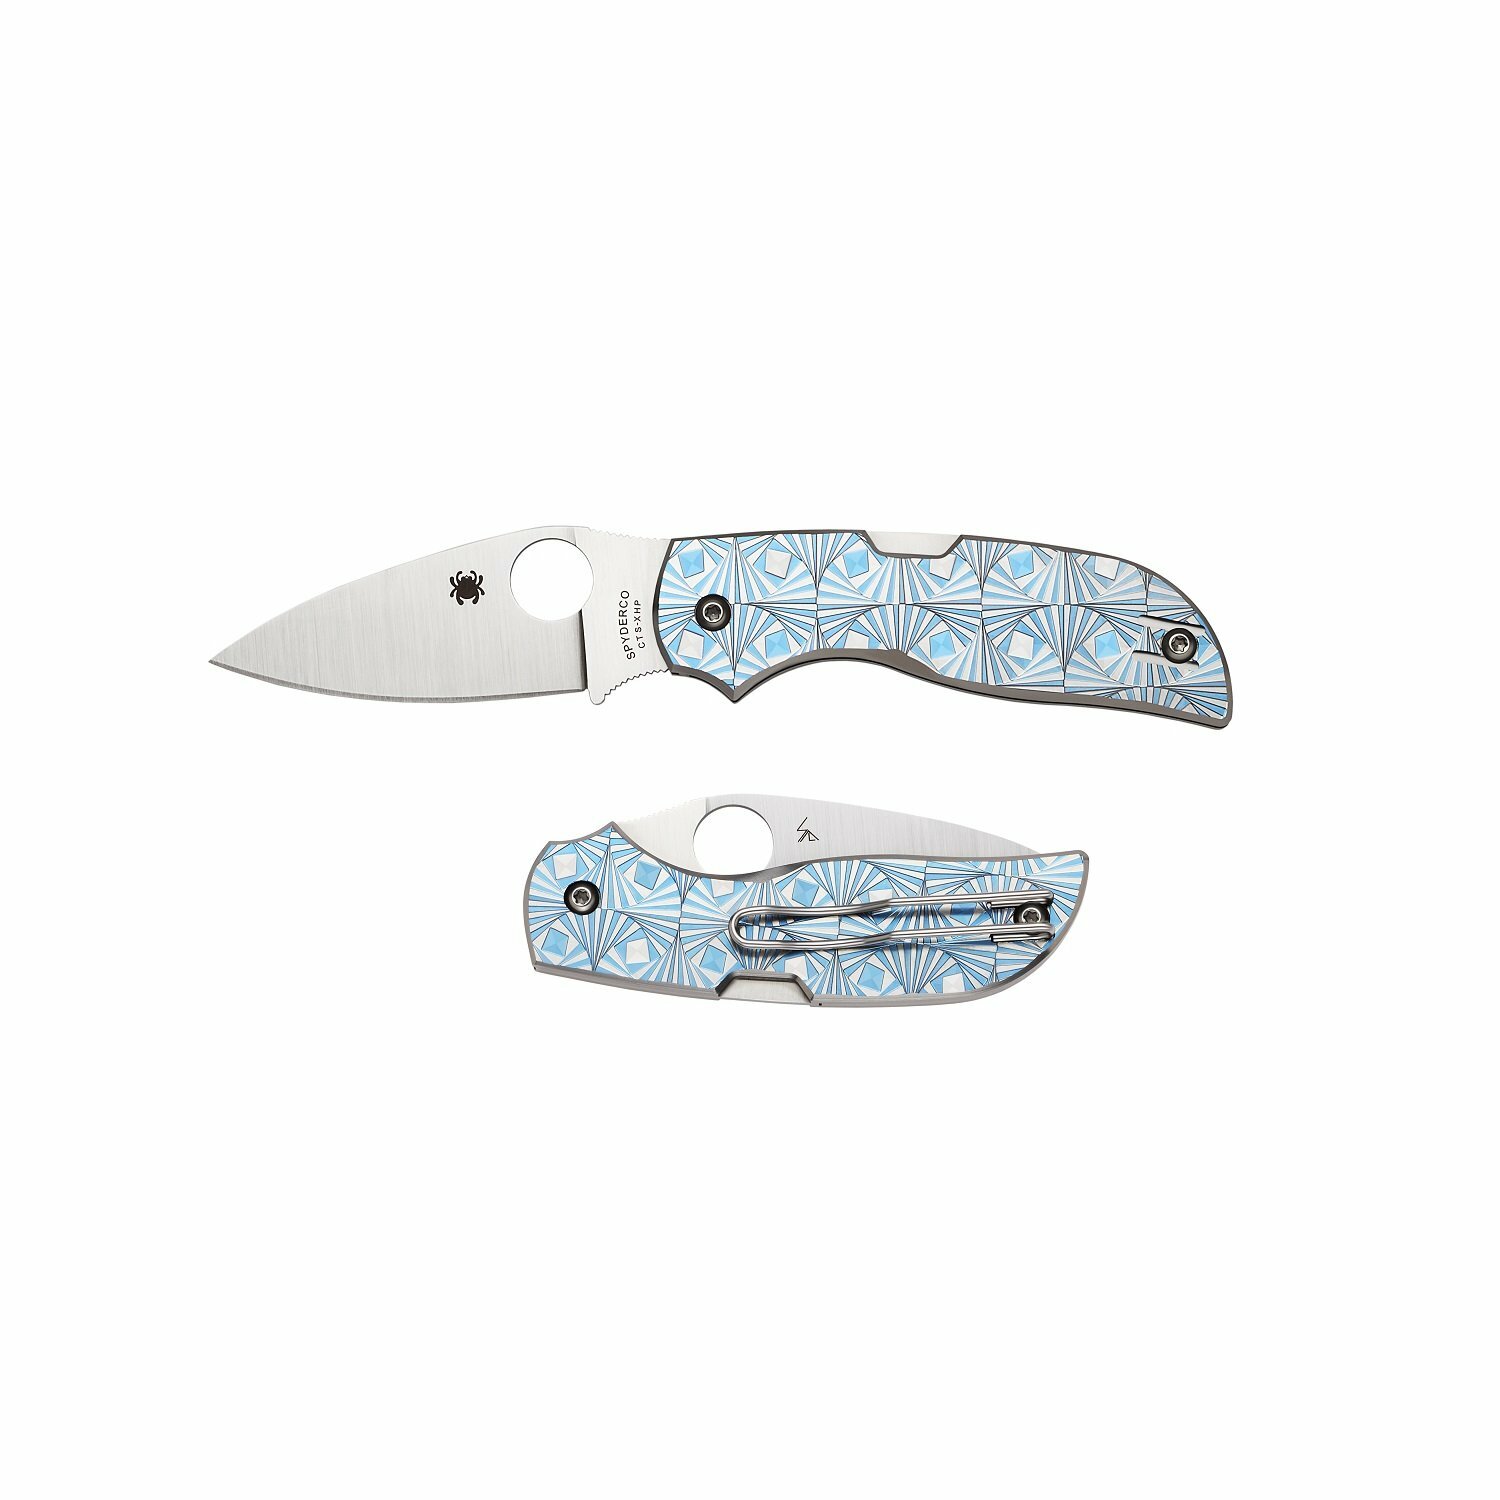 Нож складной Chaparral 3 - Spyderco C152STIBLP, сталь CTS-XHP Satin Plain, рукоять титан с узором, синий - фото 2